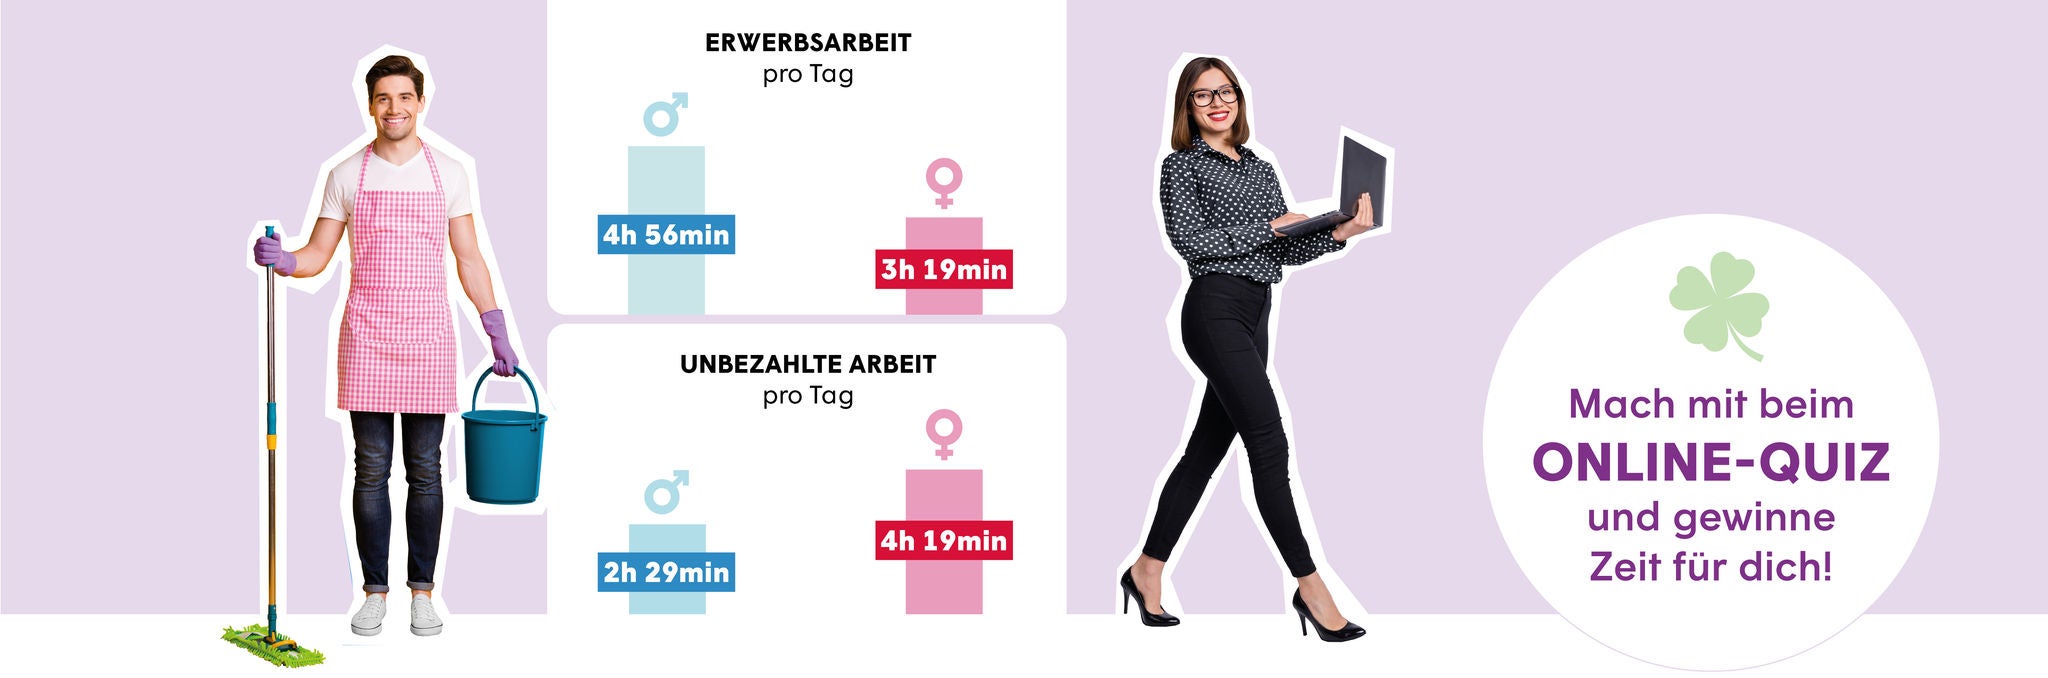 Frauentag - Unbezahlte Sorgearbeit gerecht verteilen!